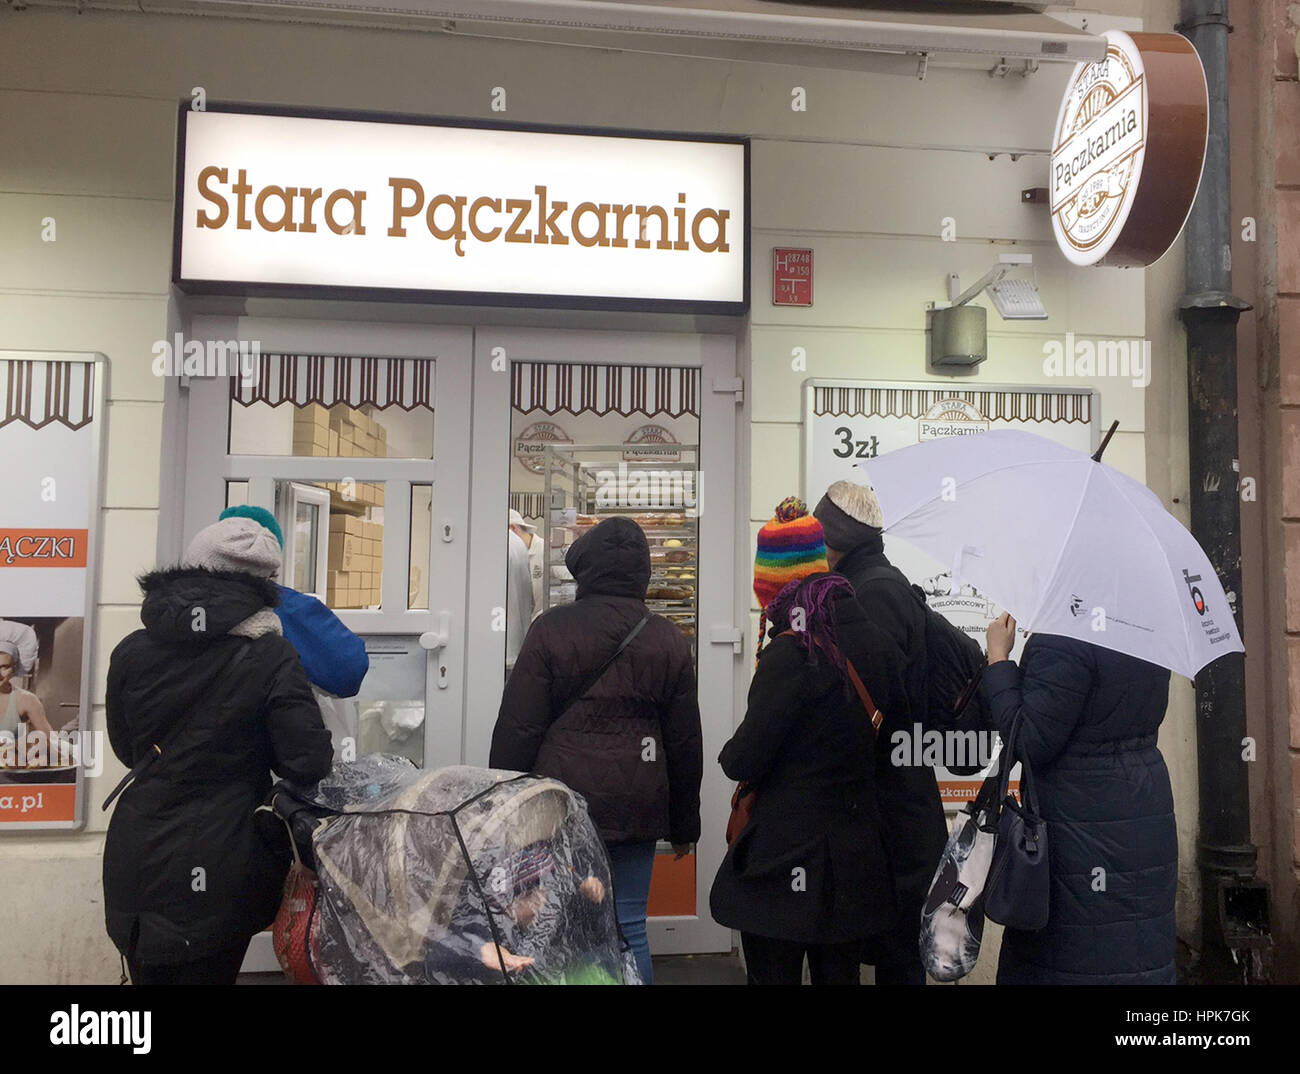 Warschau, Ppland. 22. Februar 2017. Kunden warten vor der Stara Paczkarnia (lt. alte Pancake Bakery) Patisserie auf Nowy Swiat in Warschau, Ppland, 22. Februar 2017. Zahlreiche Polen warten vor dem Laden für Süßigkeiten: mit süßen und vor allem fettiges Gebäck feiern sie Urlaubsziel Tag der polnischen Süßigkeiten, die sogenannte "fetten Donnerstag" (Tlusty Czwartek). Foto: Natalie Skrzypczak/epa Scanpix Schweden/Dpa/Alamy Live-Nachrichten Stockfoto